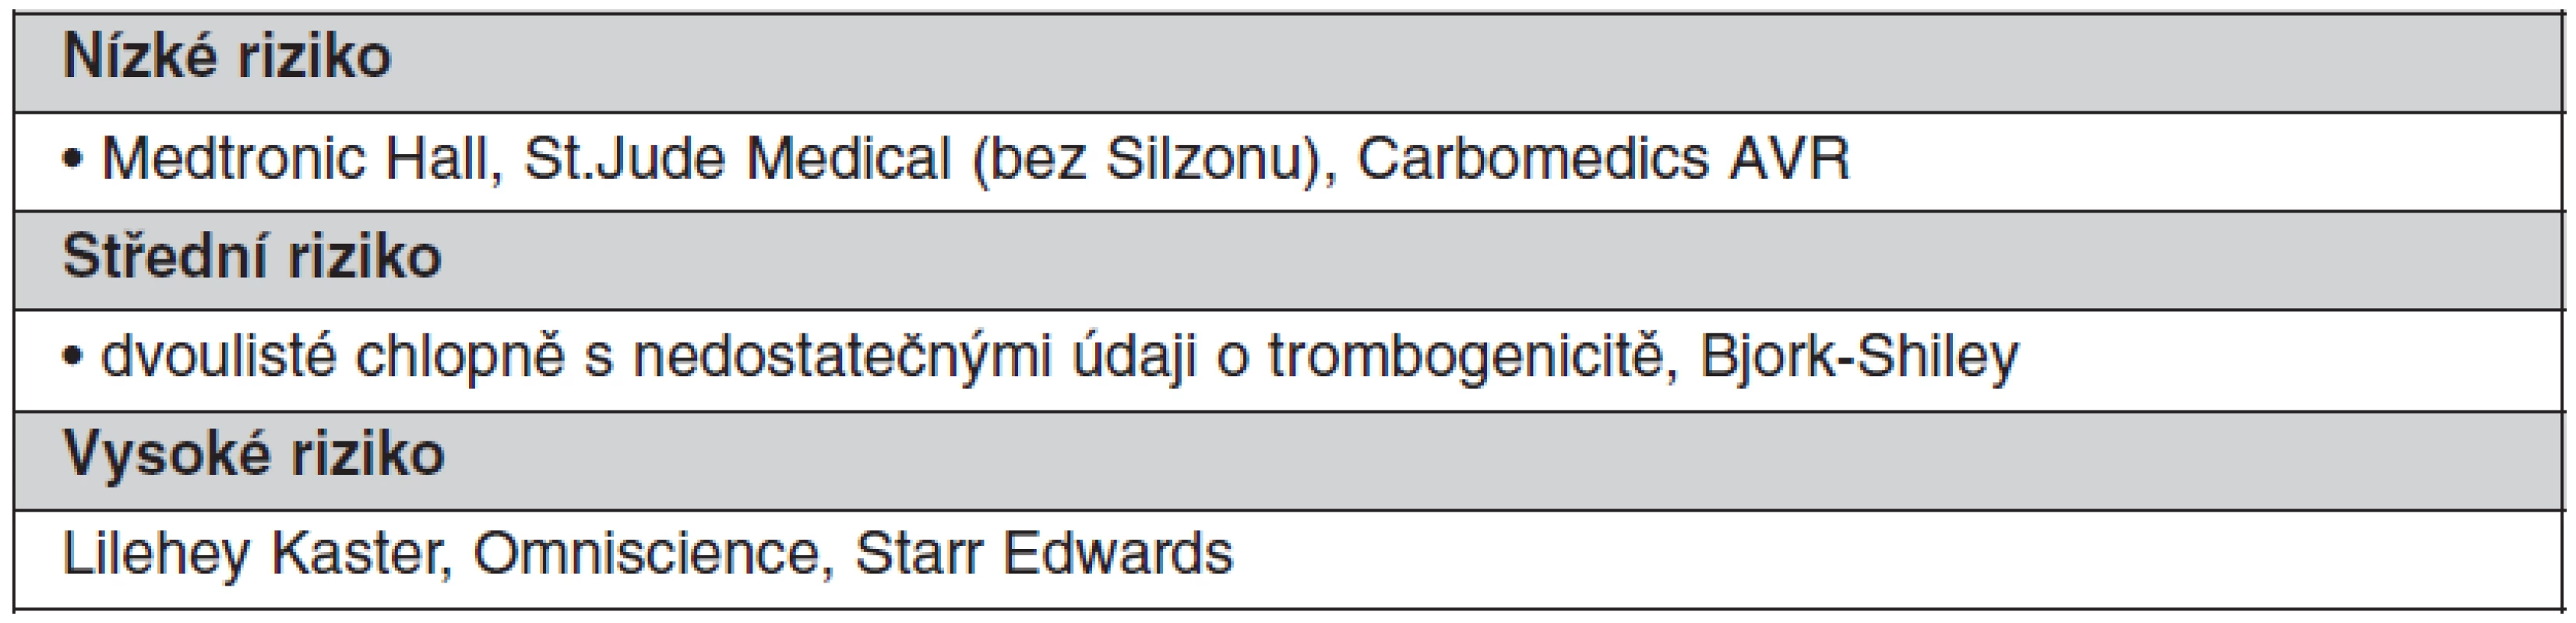 Kategorie chlopenních protéz podle trombogenicity